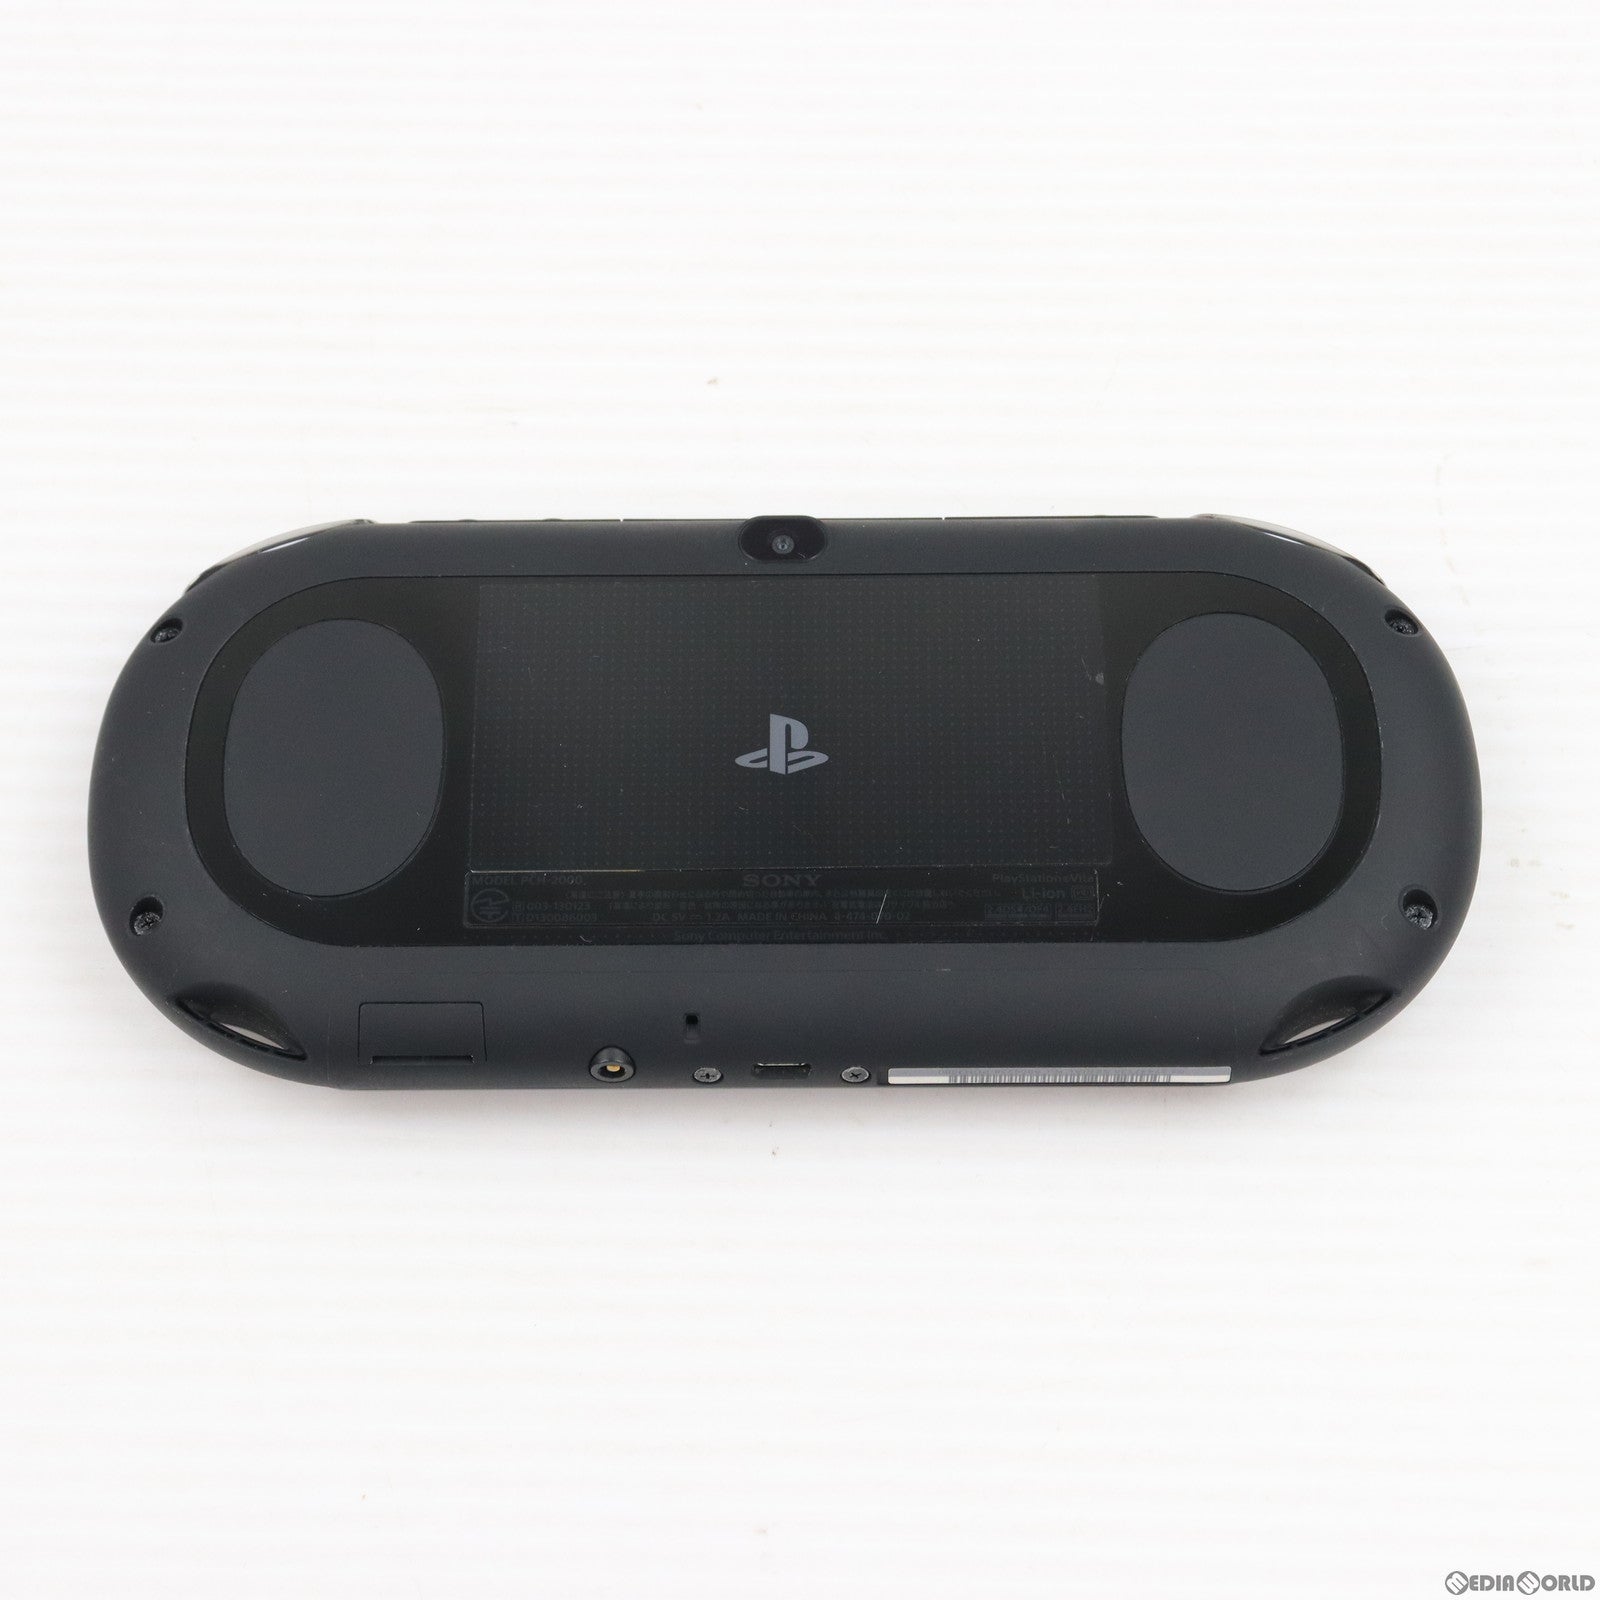 【中古即納】[本体][PSVita]PlayStation Vita プレイステーションVita Wi-Fiモデル ブラック(PCH-2000ZA11)(20131010)